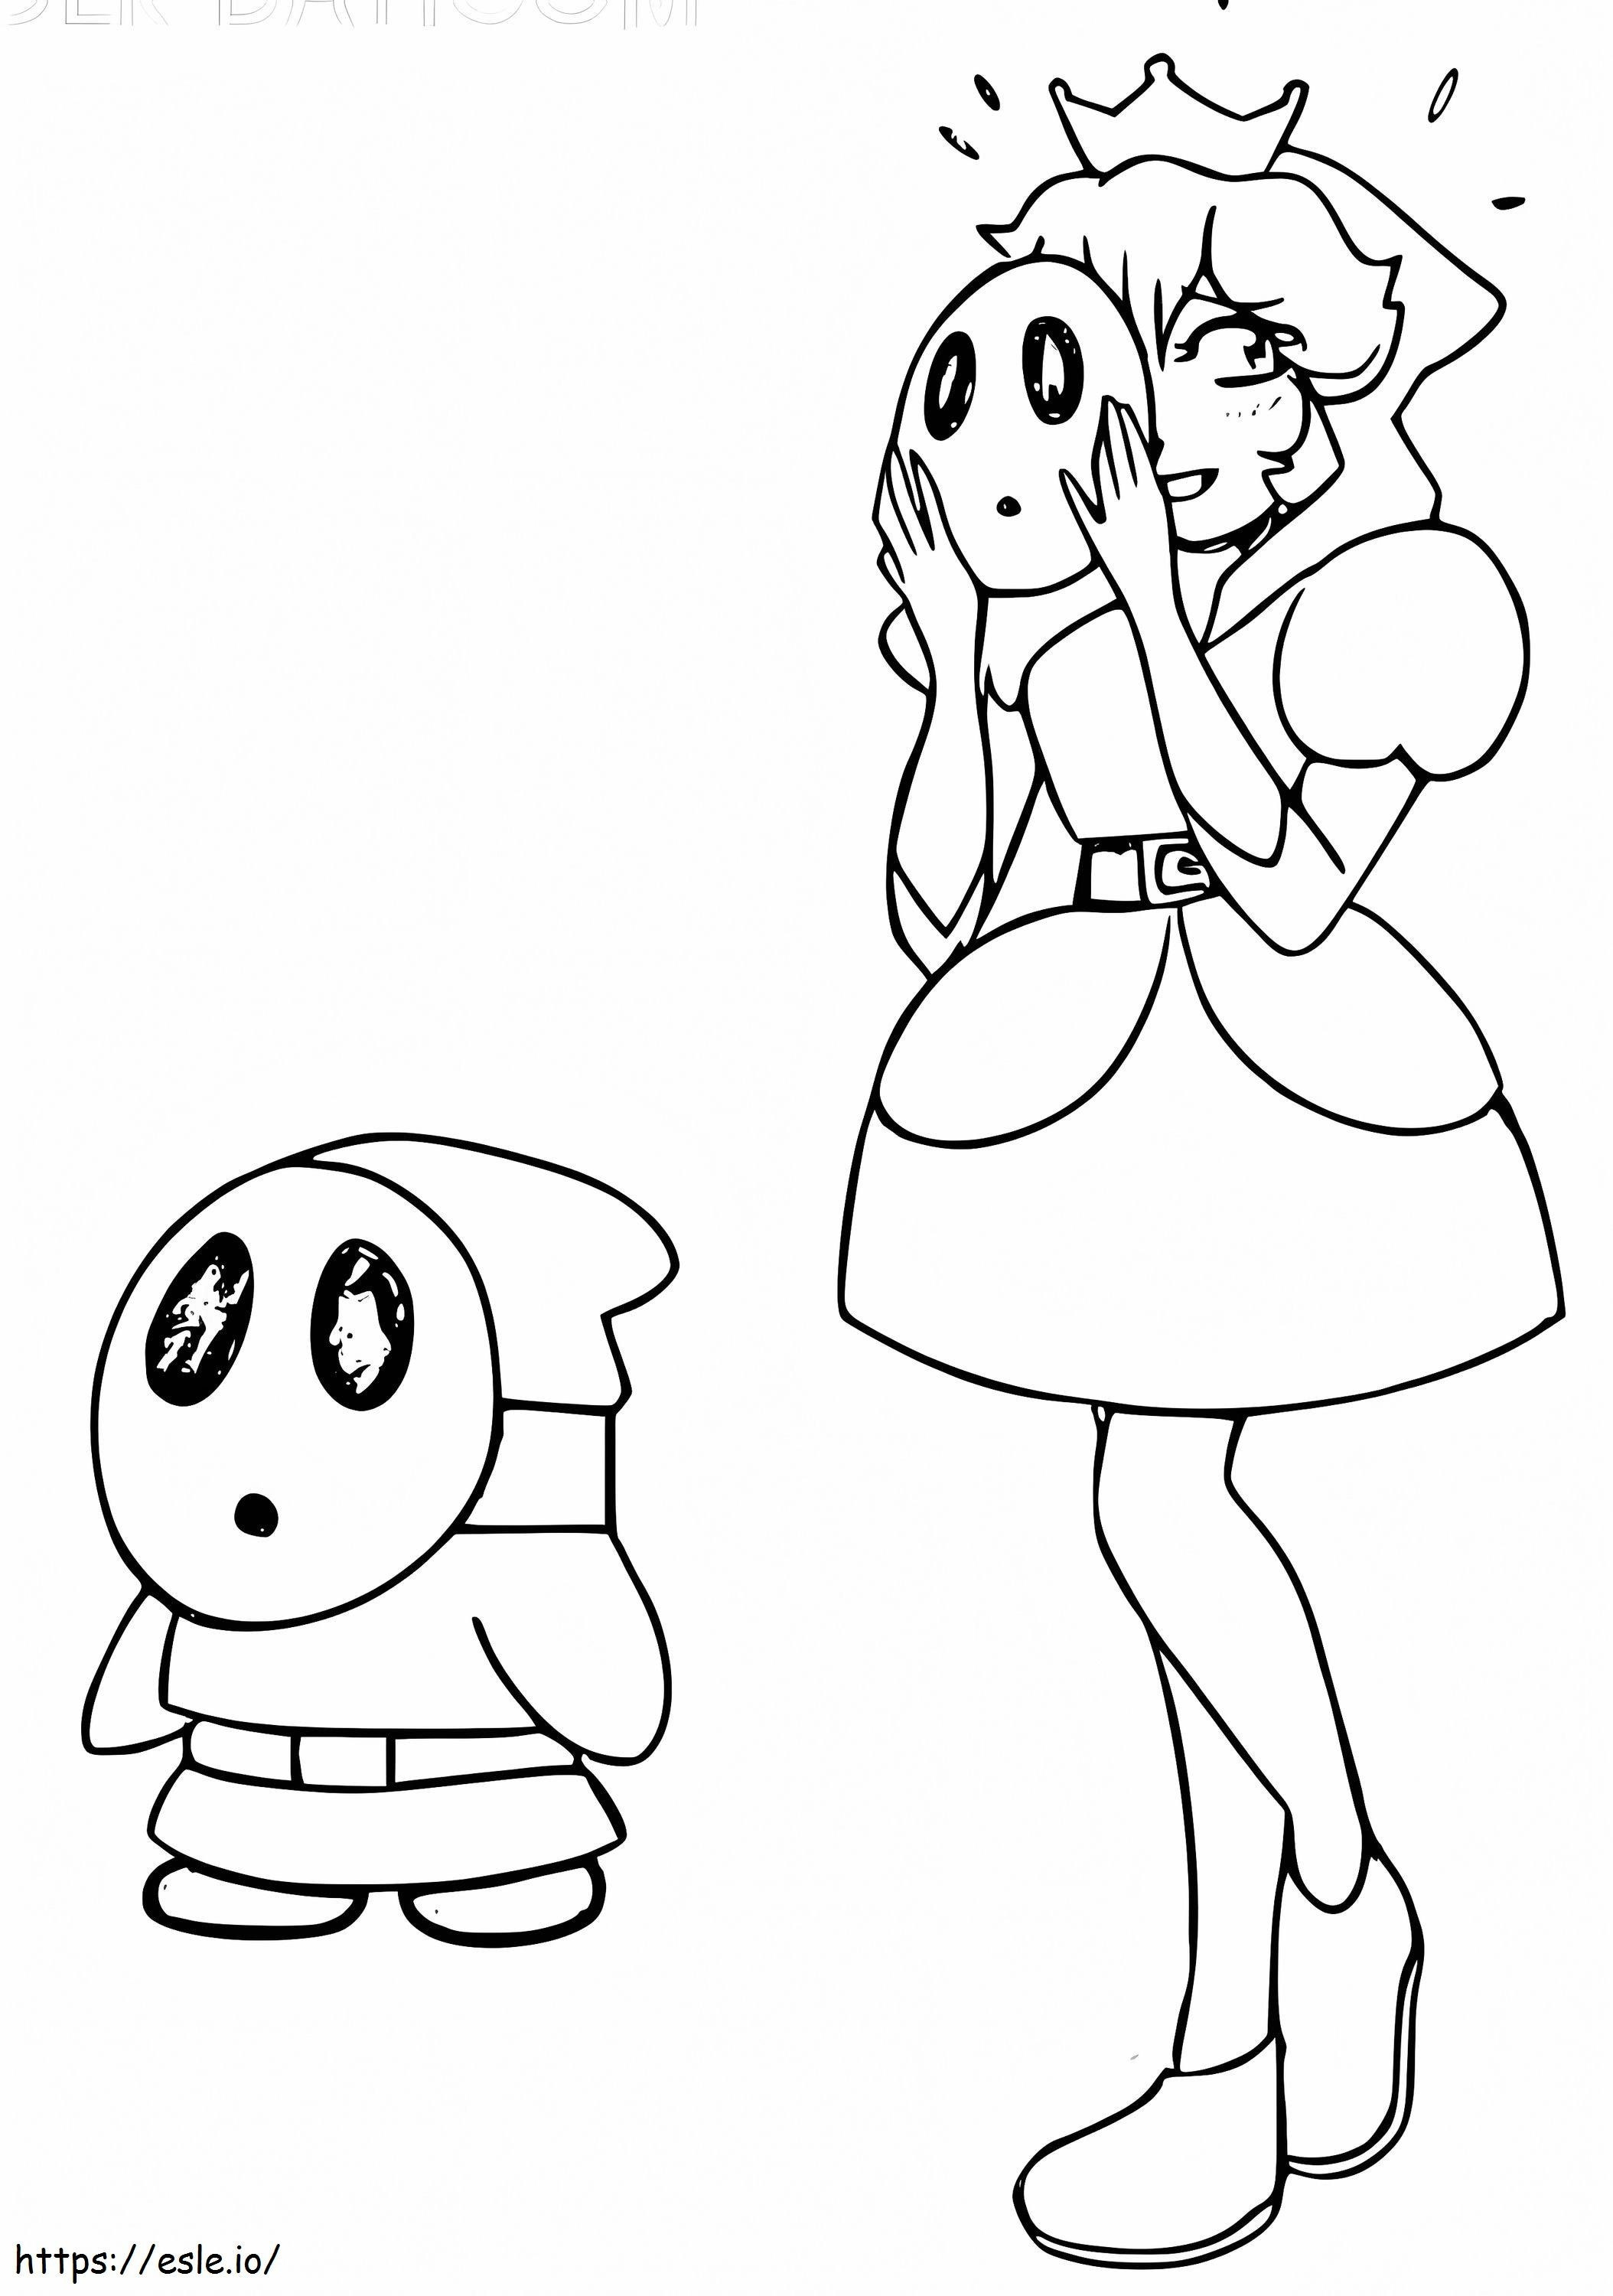 La princesa Peach y el chico tímido para colorear